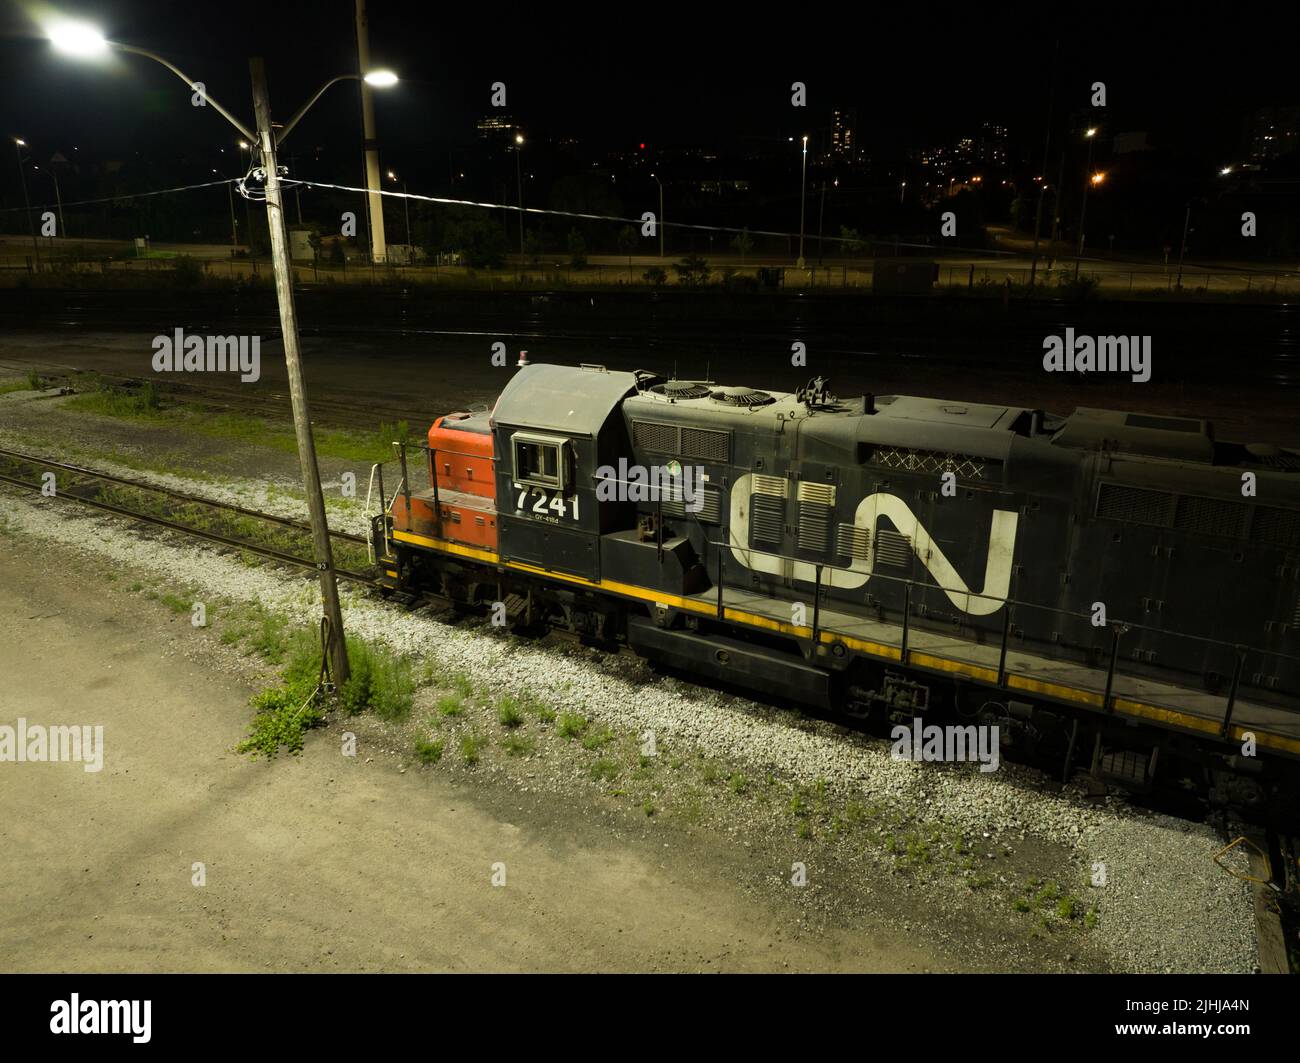 Una locomotora fija CN Rail (Canadian National Railway) se ve de noche con su logotipo iluminado en el lateral del tren. Foto de stock